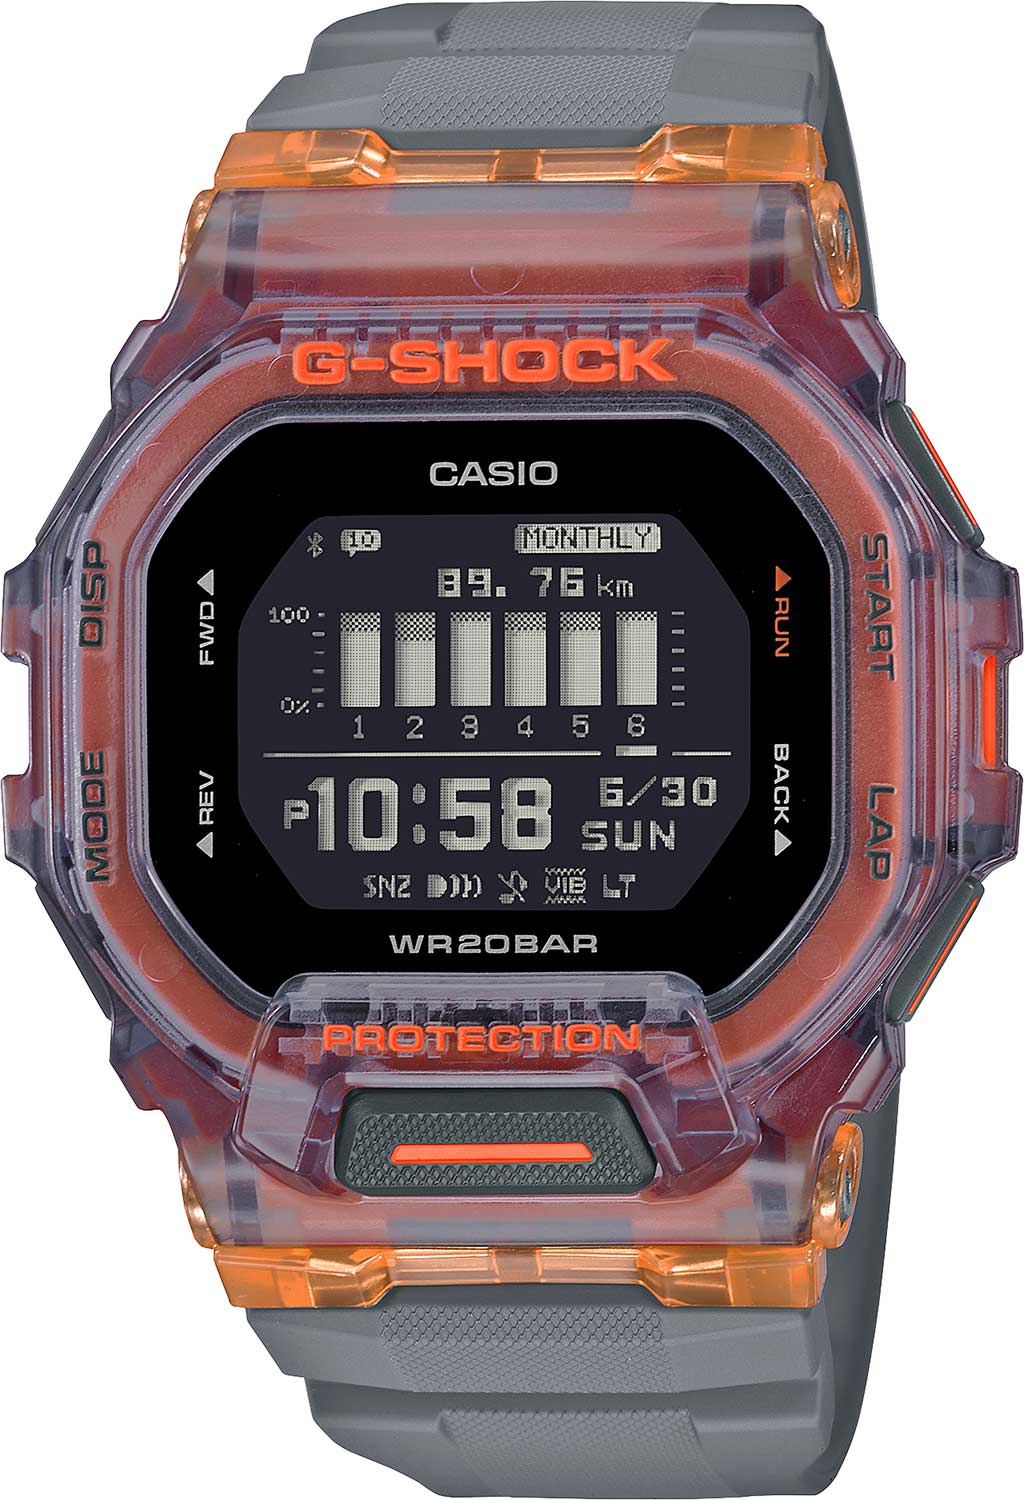     Casio G-SHOCK GBD-200SM-1A5  